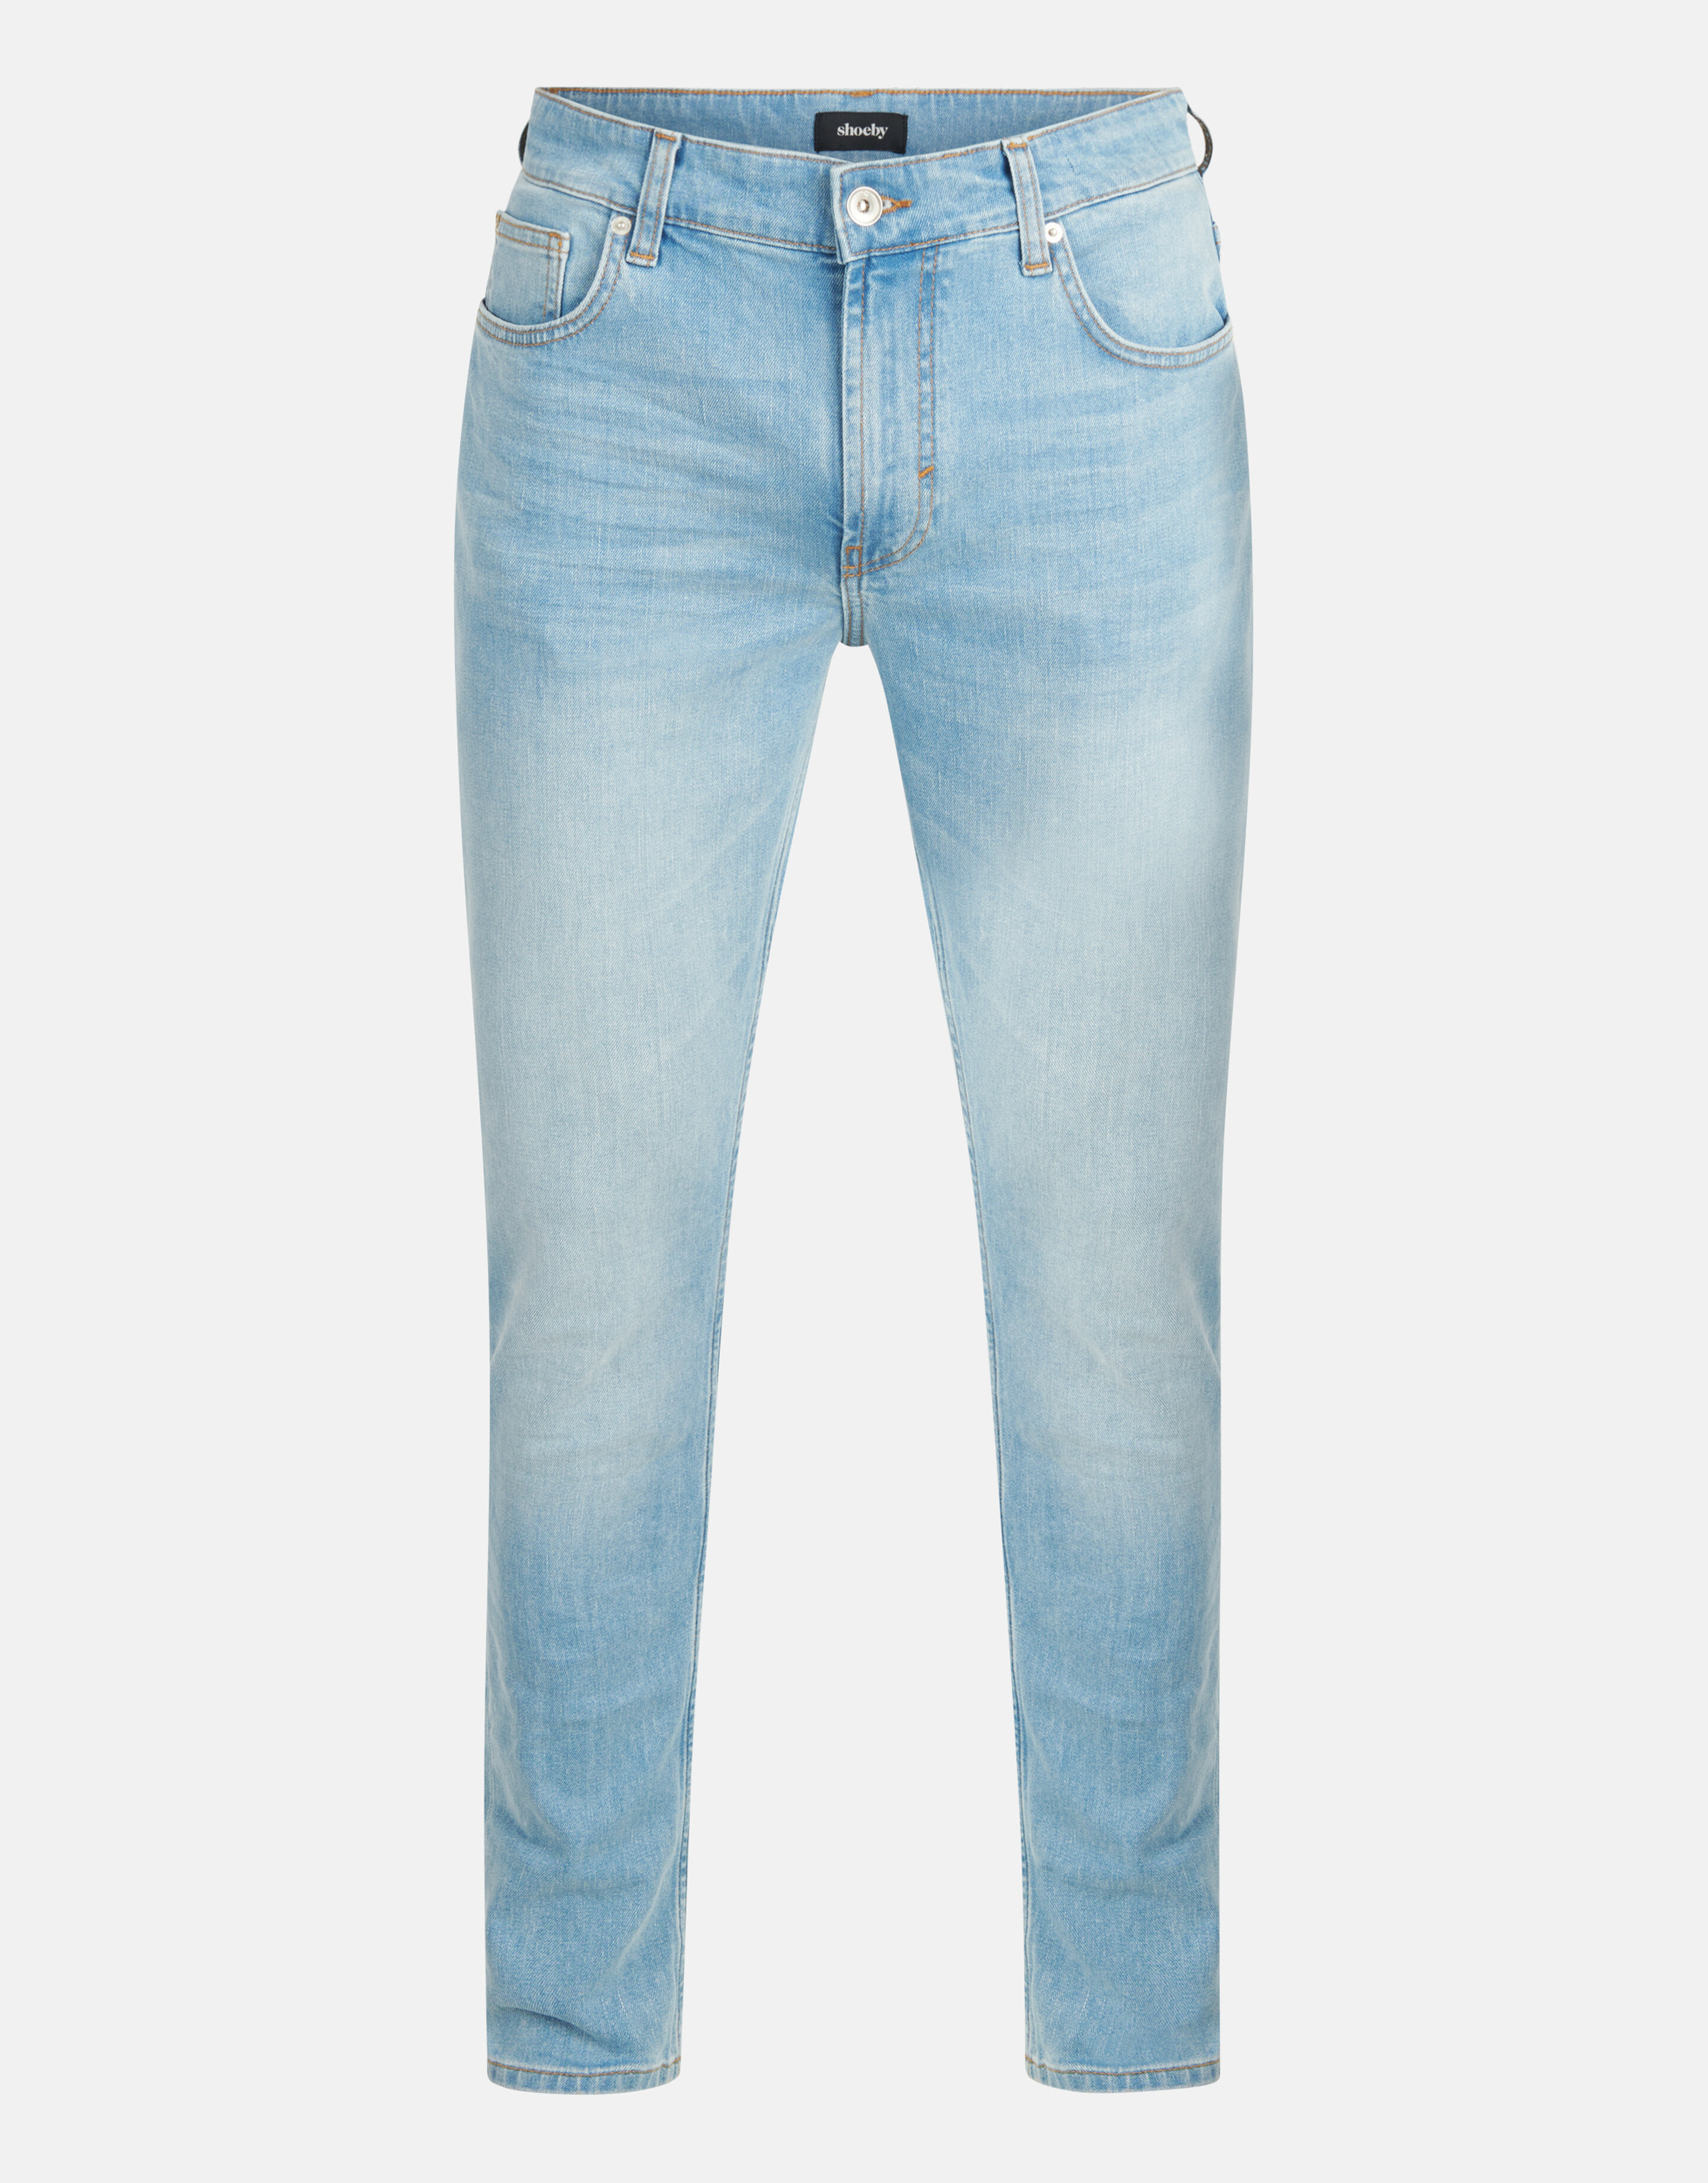 Taillierte Jeans Hellblau L32 SHOEBY MEN